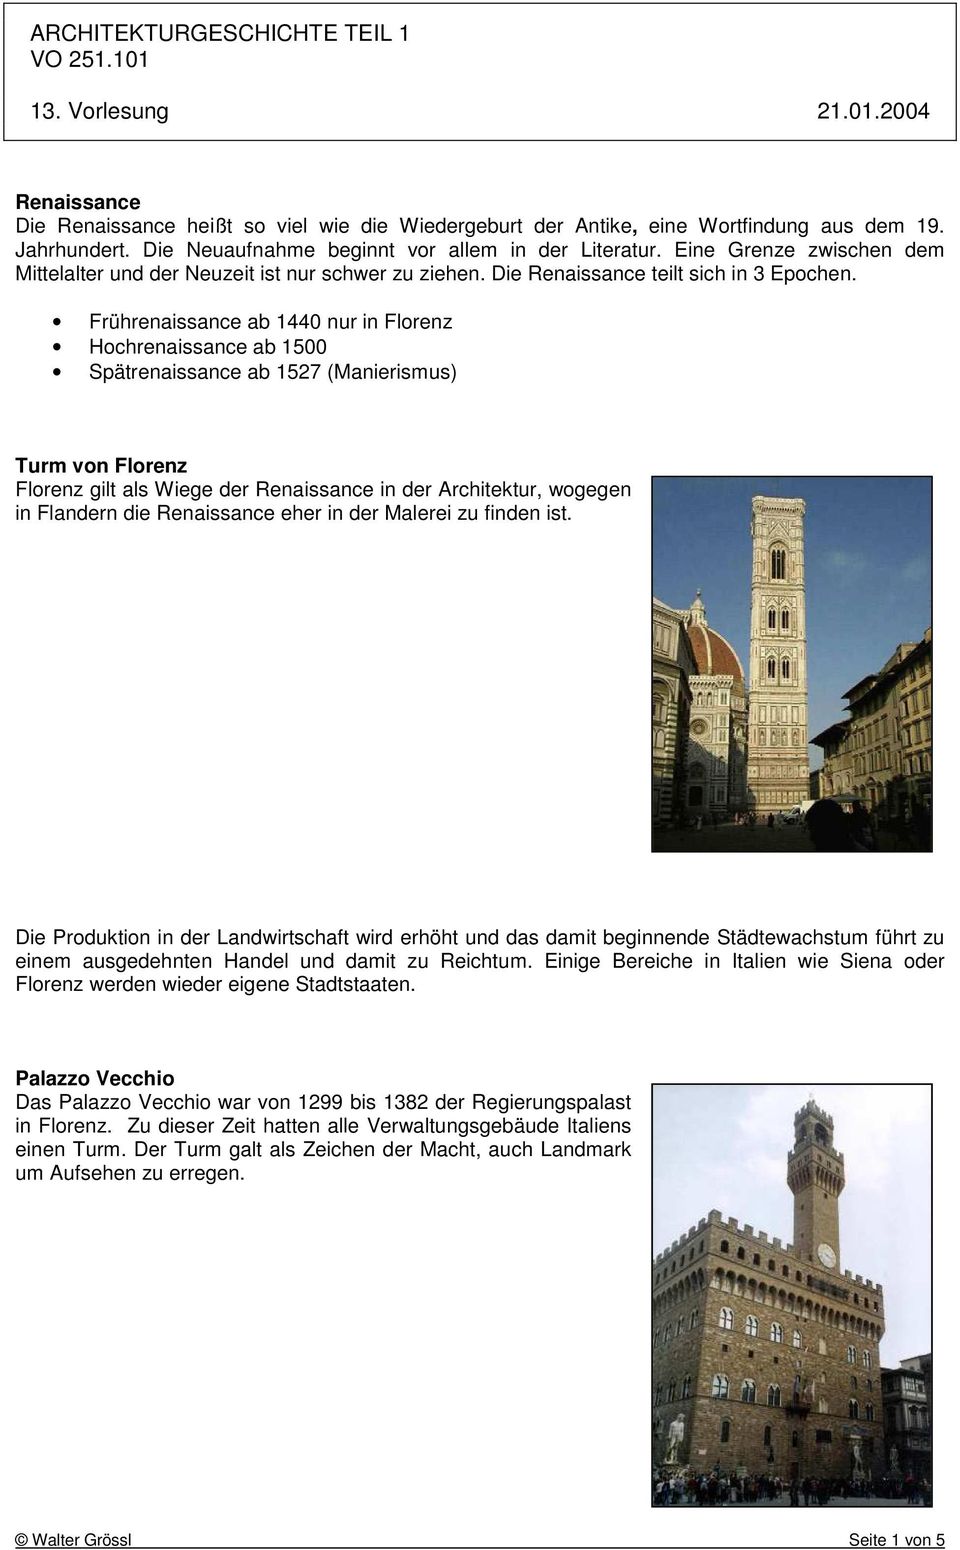 Frührenaissance ab 1440 nur in Florenz Hochrenaissance ab 1500 Spätrenaissance ab 1527 (Manierismus) Turm von Florenz Florenz gilt als Wiege der Renaissance in der Architektur, wogegen in Flandern